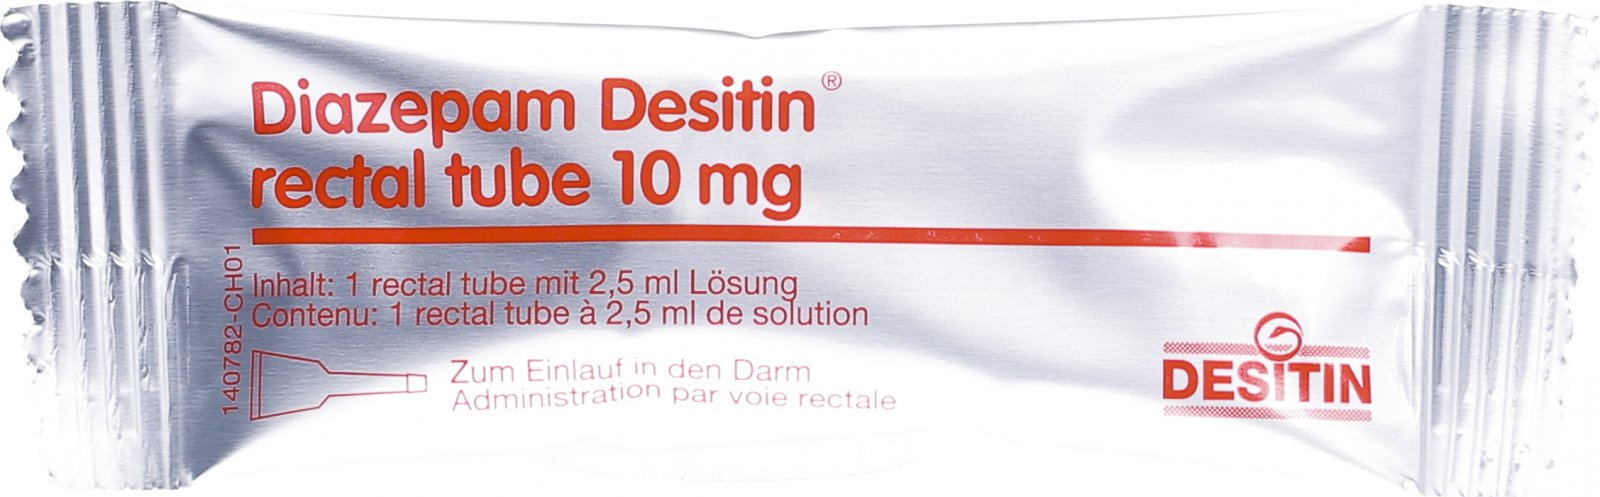 Ректальный на латинском. Диазепам Деситин ректальный тюбик 5 мг. Диазепам в ректальных тубах 10 мг. Диазепам для ректальные тюбики 5 мг.. Диазепам 5 мг/2,5 мл ректальный.